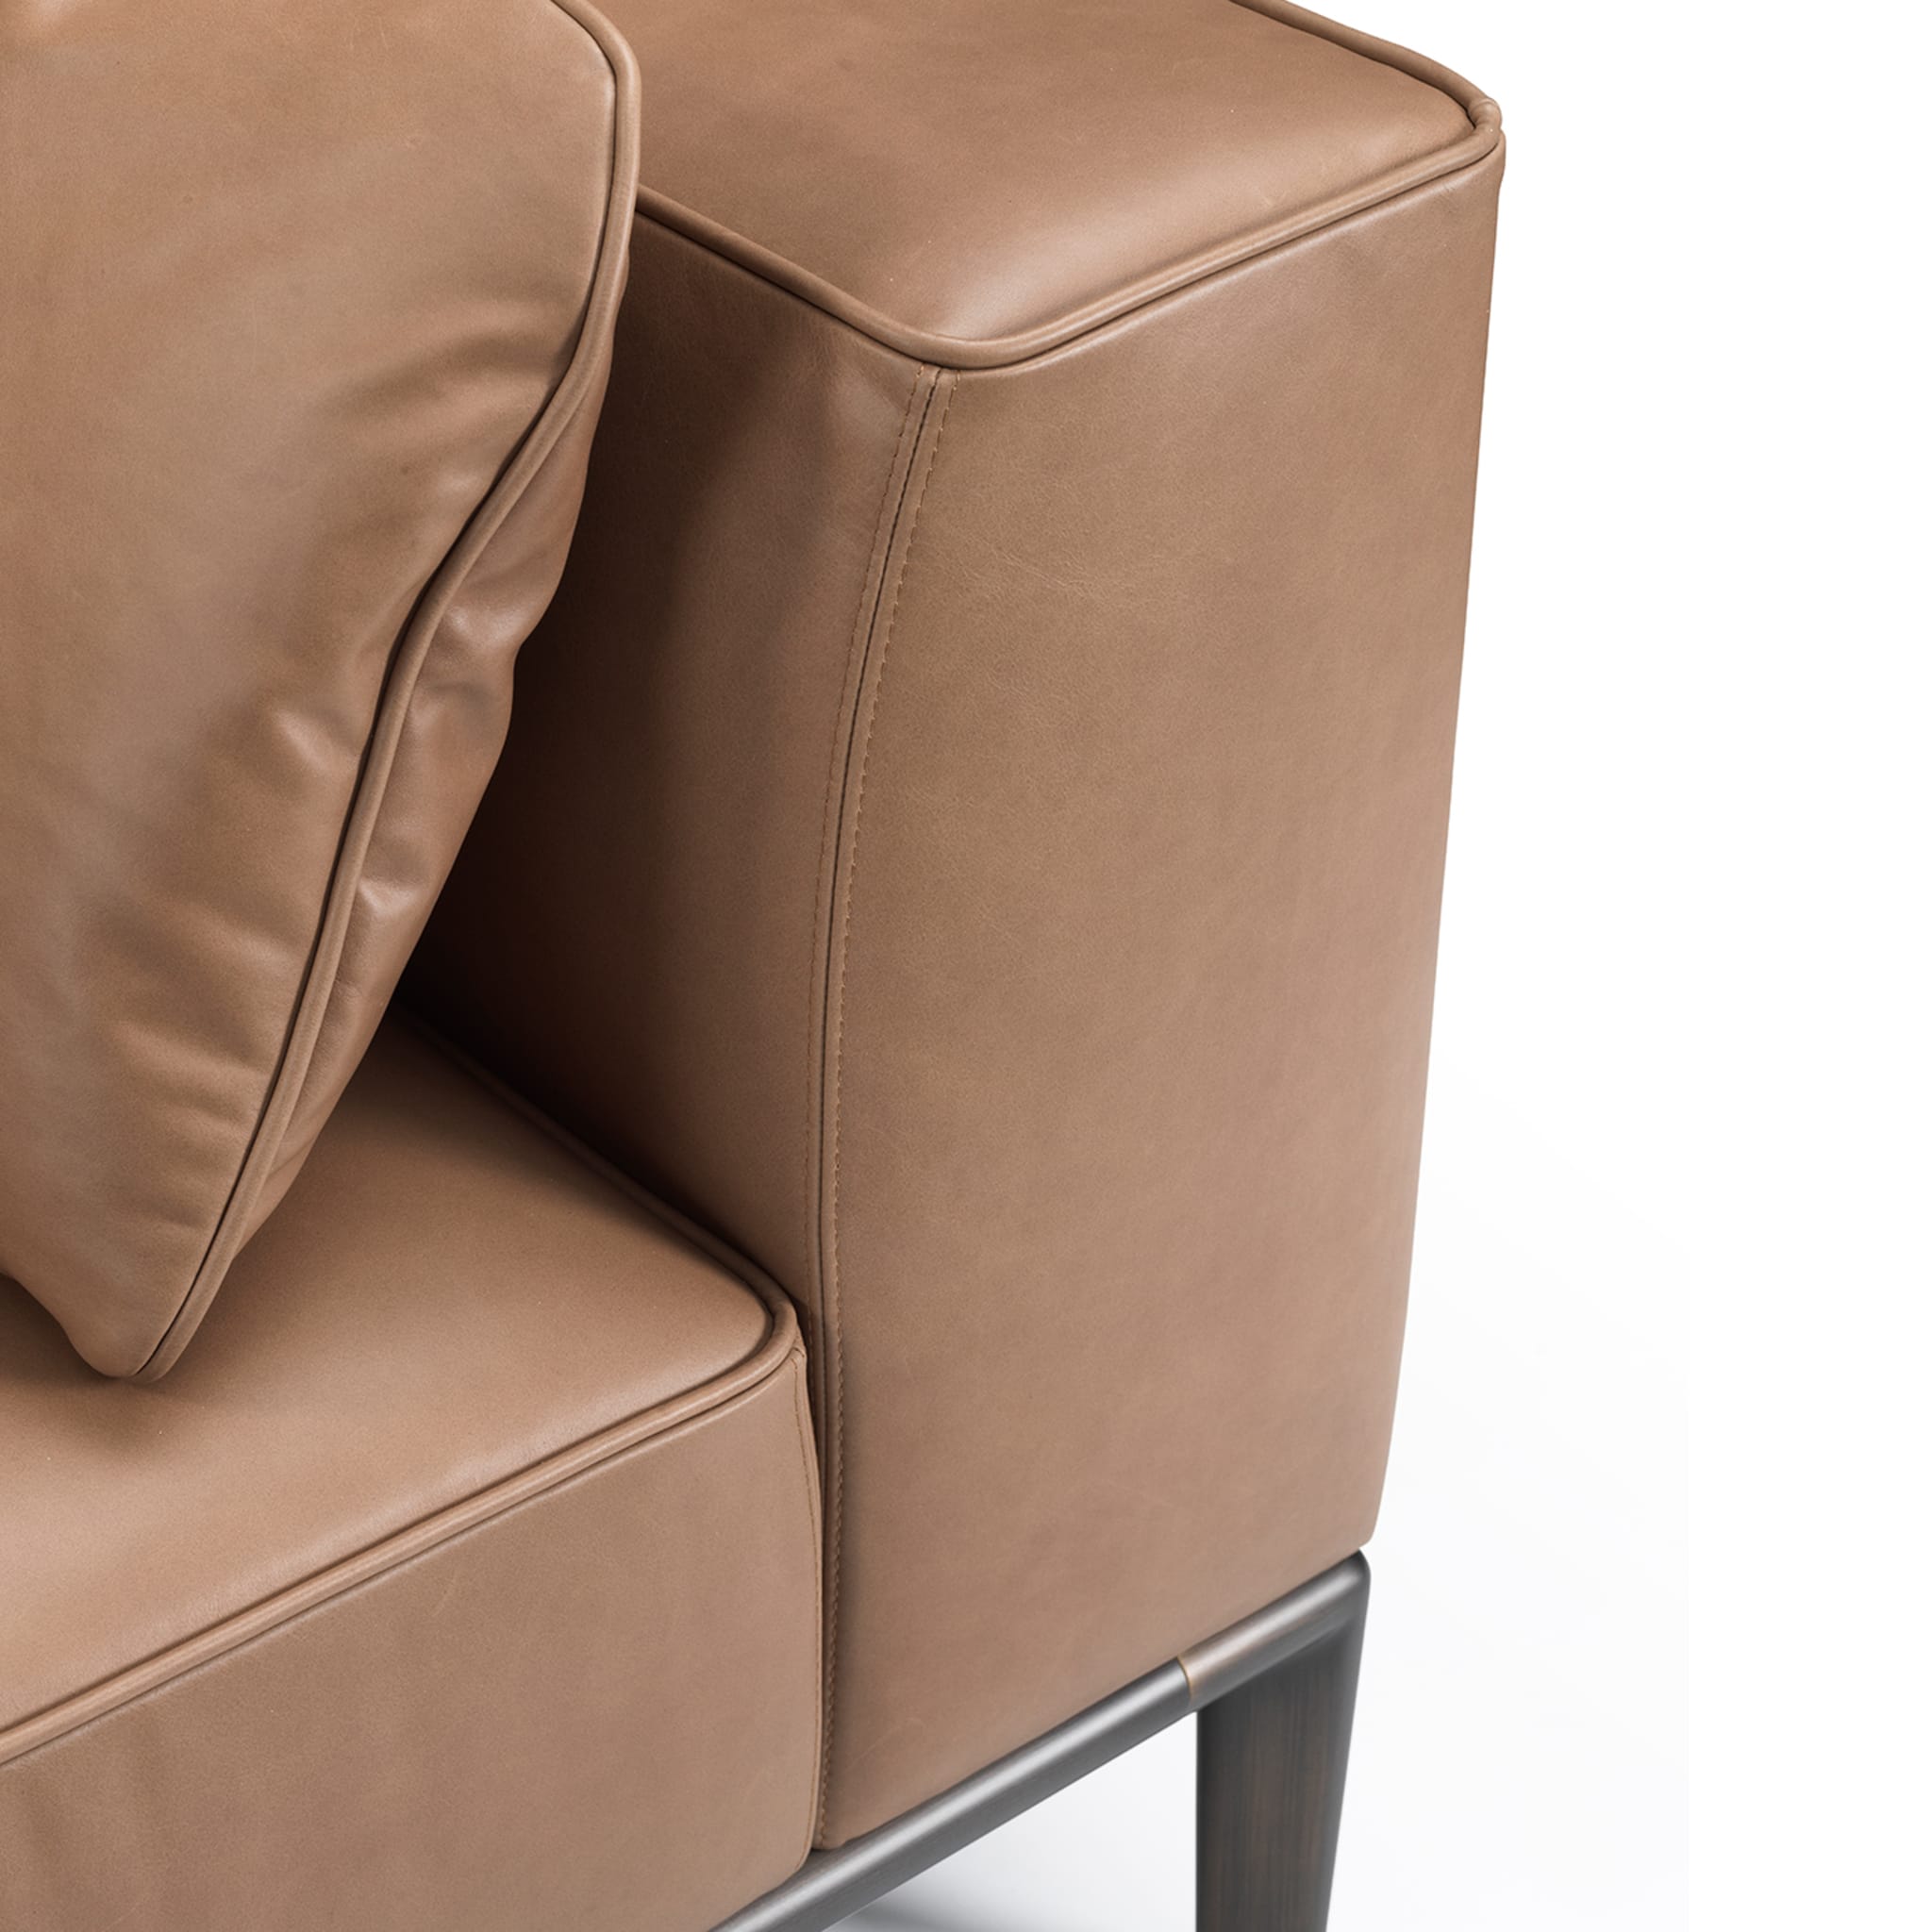 Milo Brown Leather Sofa by Stefano Giovannoni - Alternative view 2